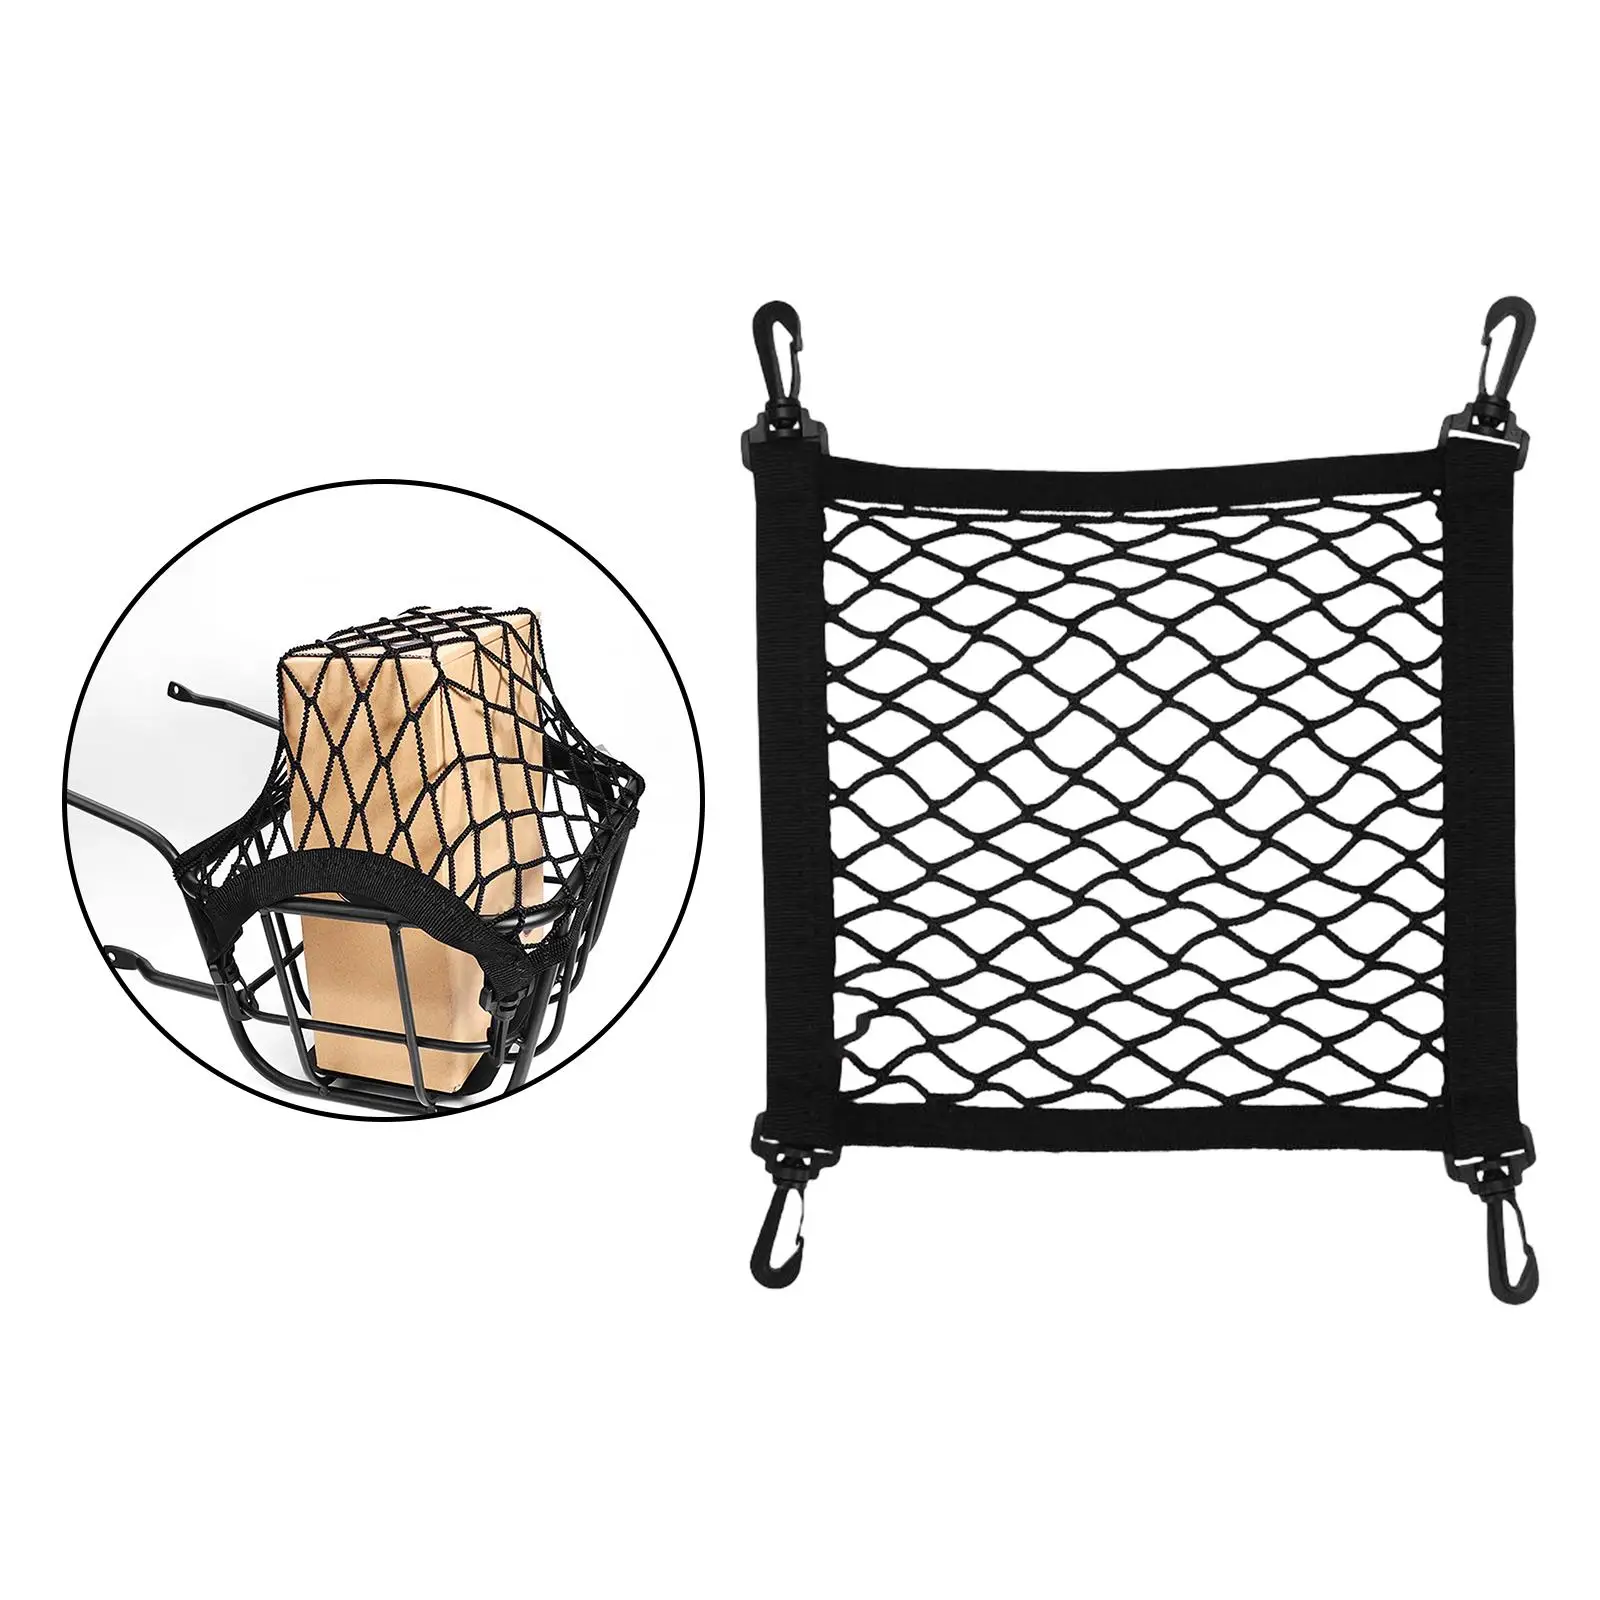 Single Layer Automotive Basket Net Mesh Car Accessories Reusable Stretchable